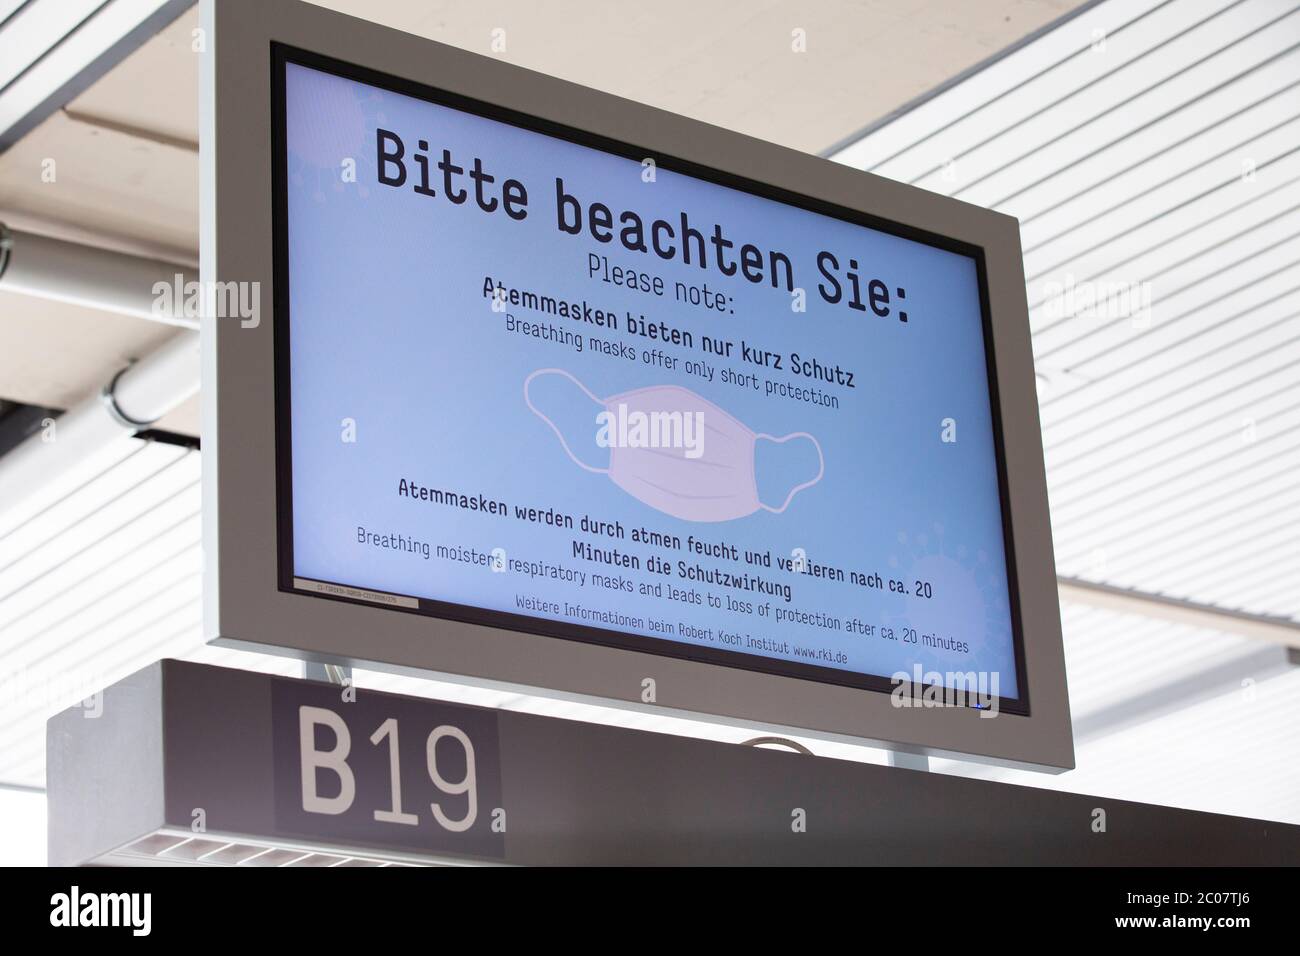 Hinweistafel am Flughafen Köln/Bonn zur Vorsorge im Zusammenhang mit der weltweiten Ausbreitung des Coronavirus. Köln, 14.03.2020 Foto Stock